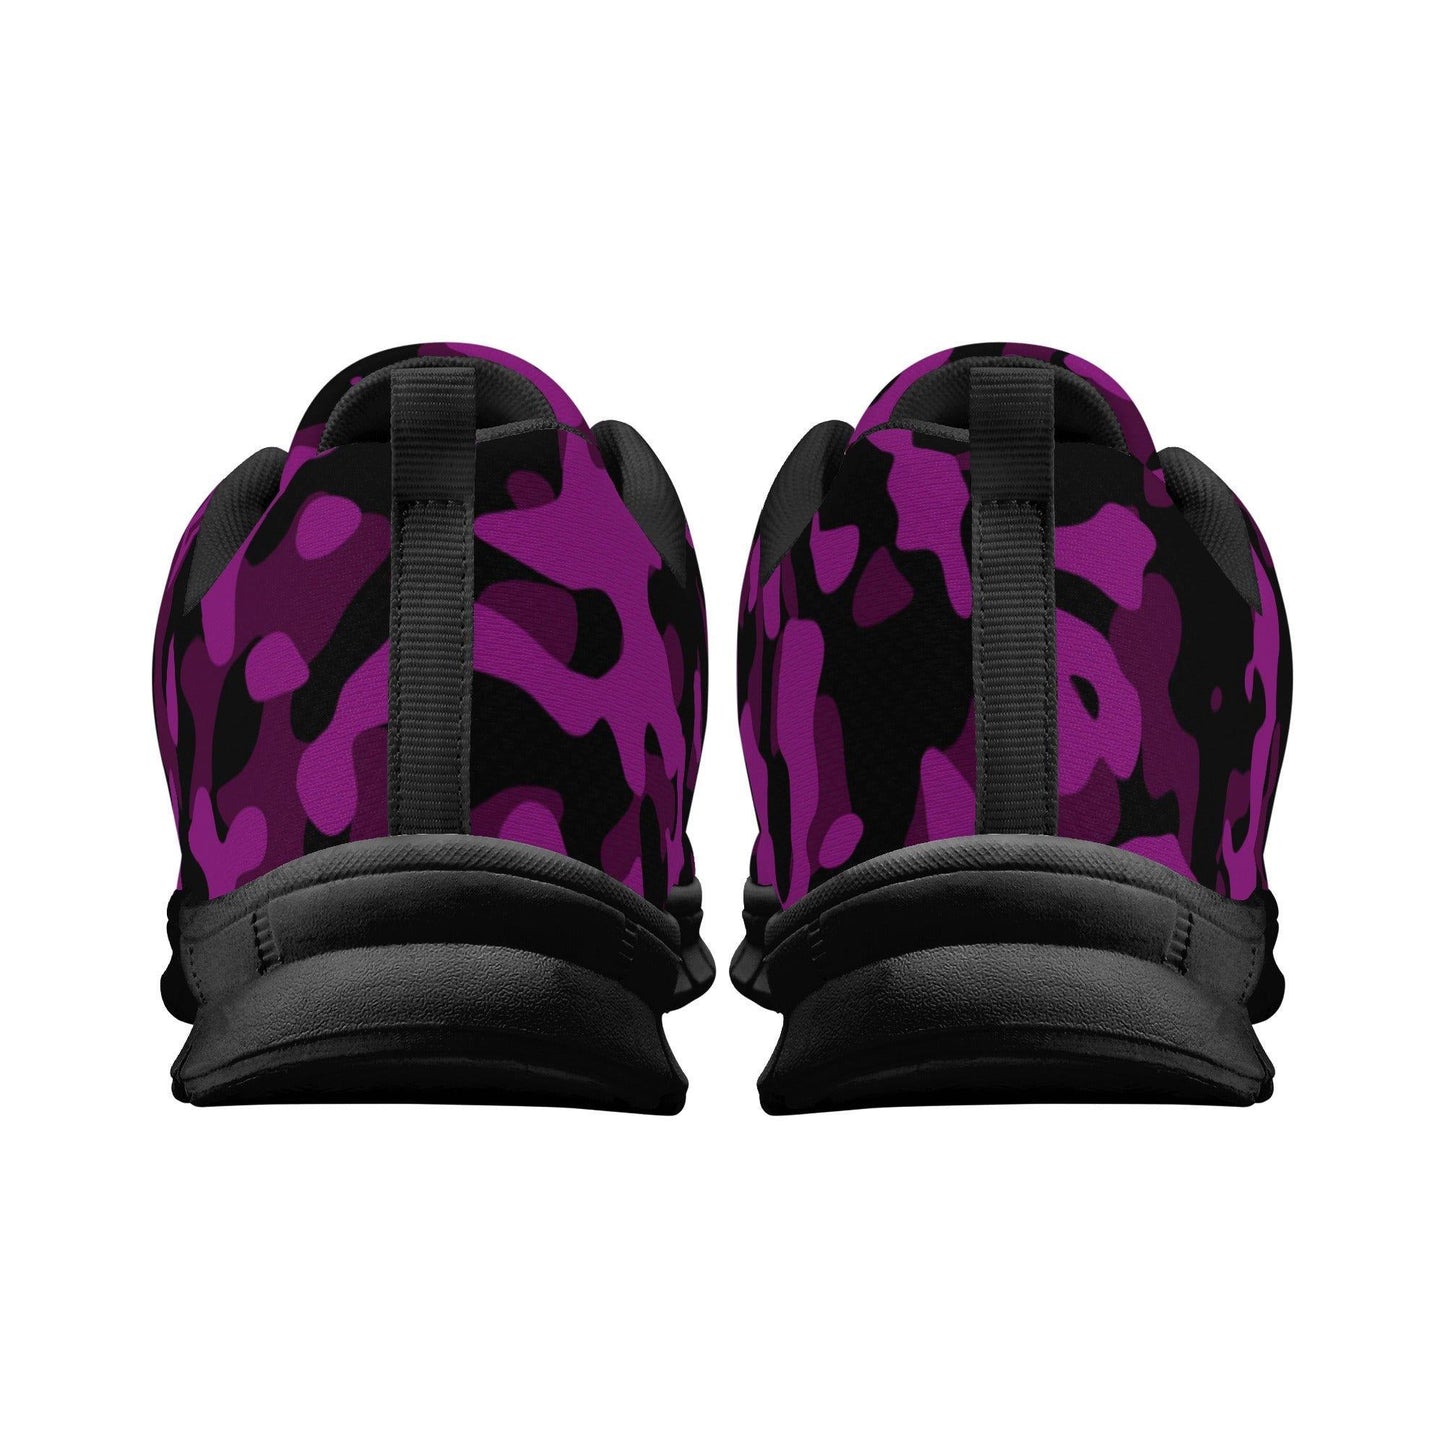 Black Pink Camouflage Herren Laufschuhe Laufschuhe 77.99 Black, Camouflage, Herren, Laufschuhe, Pink JLR Design